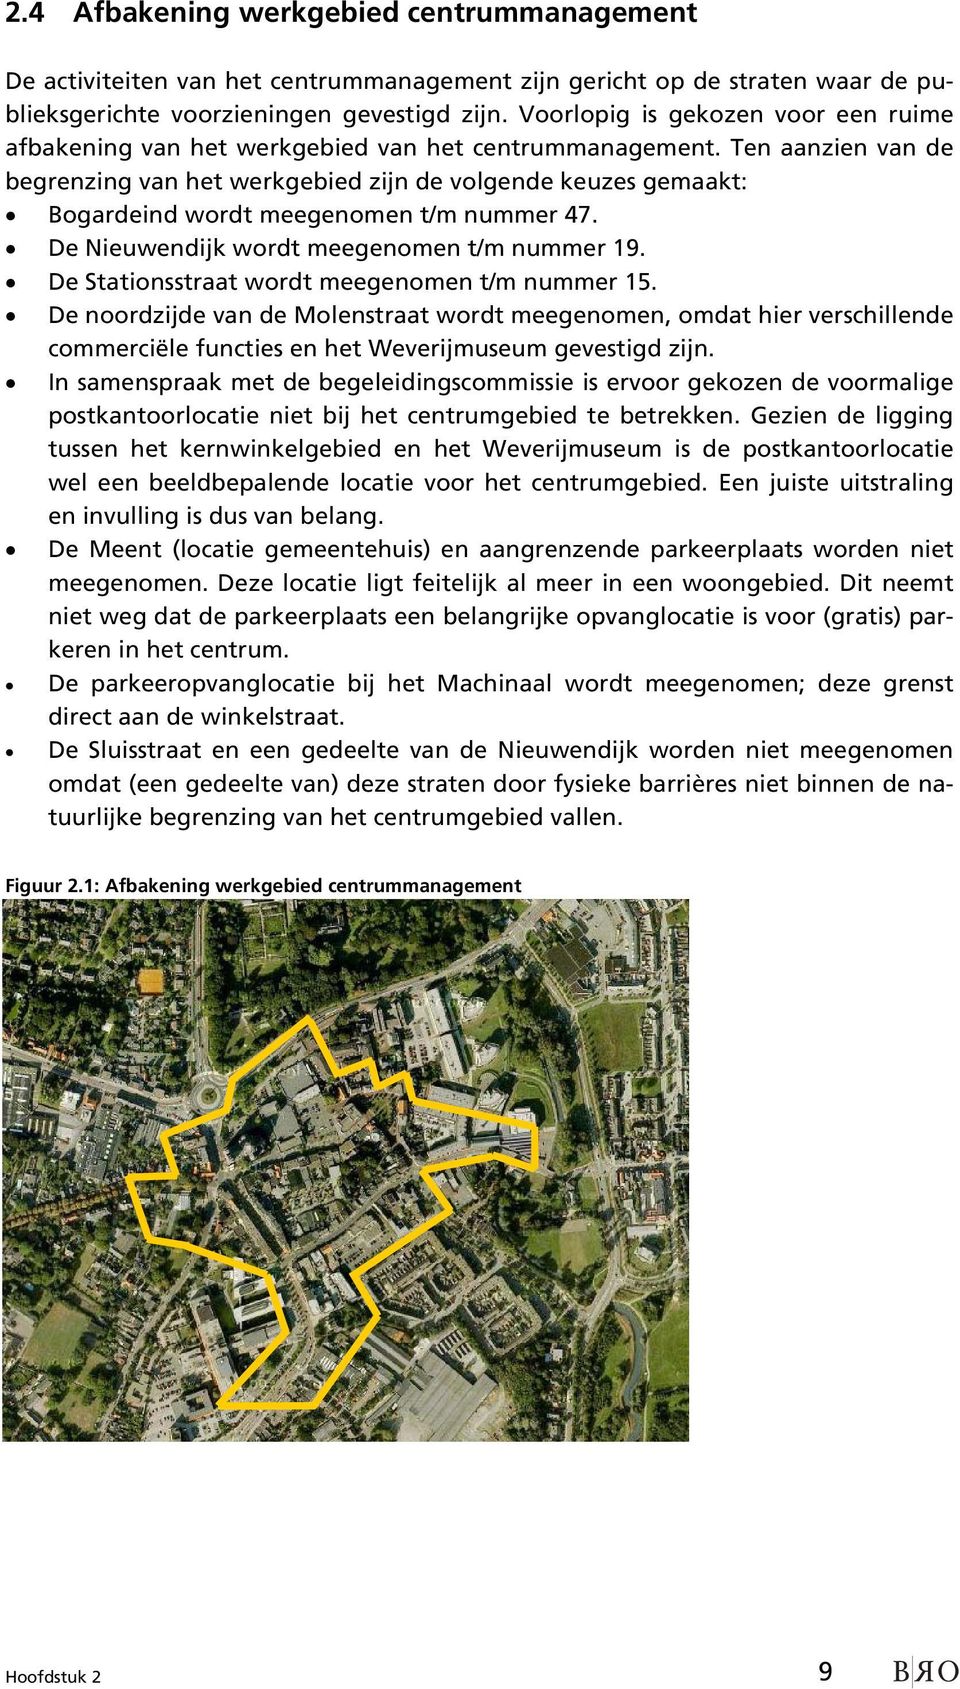 Ten aanzien van de begrenzing van het werkgebied zijn de volgende keuzes gemaakt: Bogardeind wordt meegenomen t/m nummer 47. De Nieuwendijk wordt meegenomen t/m nummer 19.